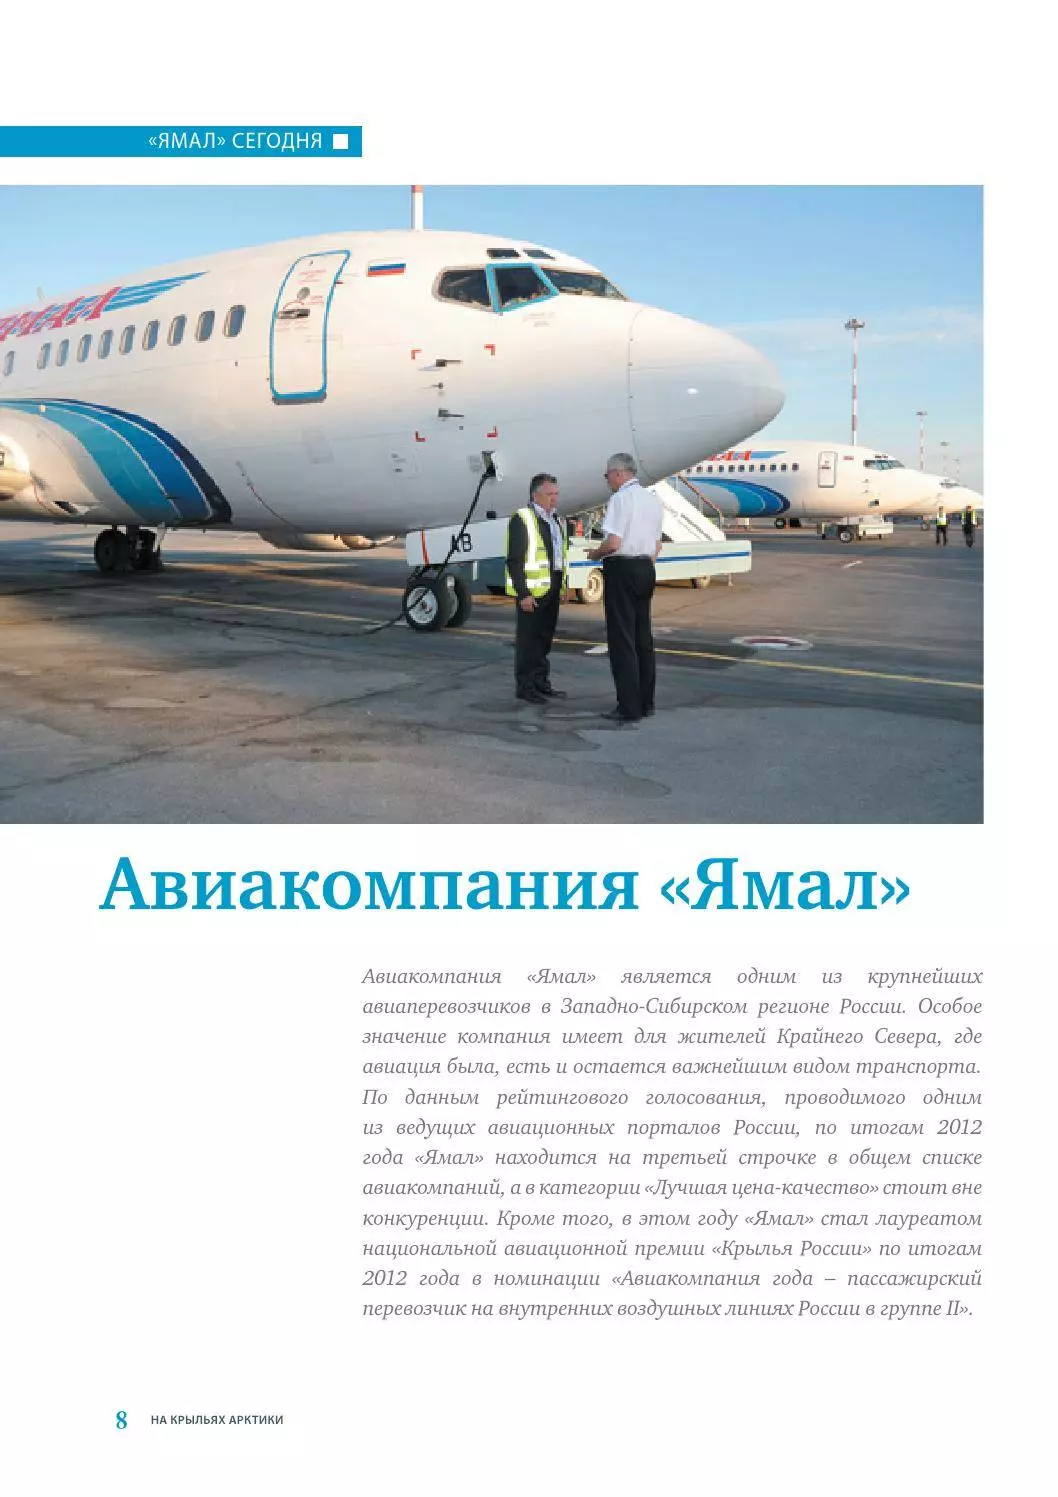 Авиакомпания ямал (yamal) отзывы - авиакомпании - сайт отзывов из россии